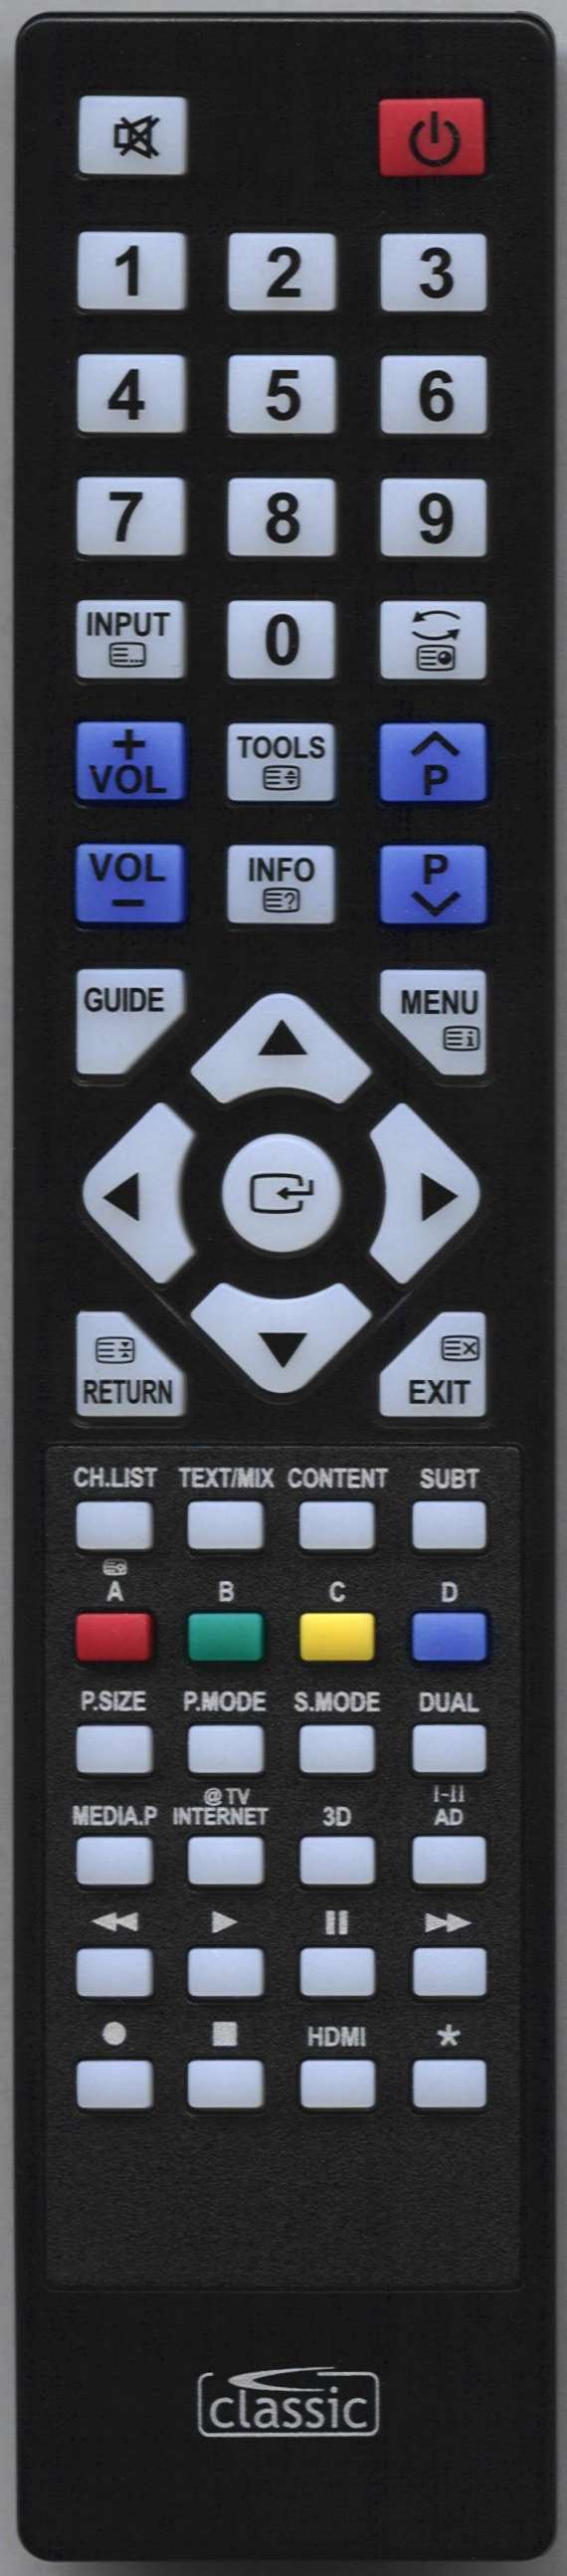 SAMSUNG UE46C6620UWXBT Remote Control